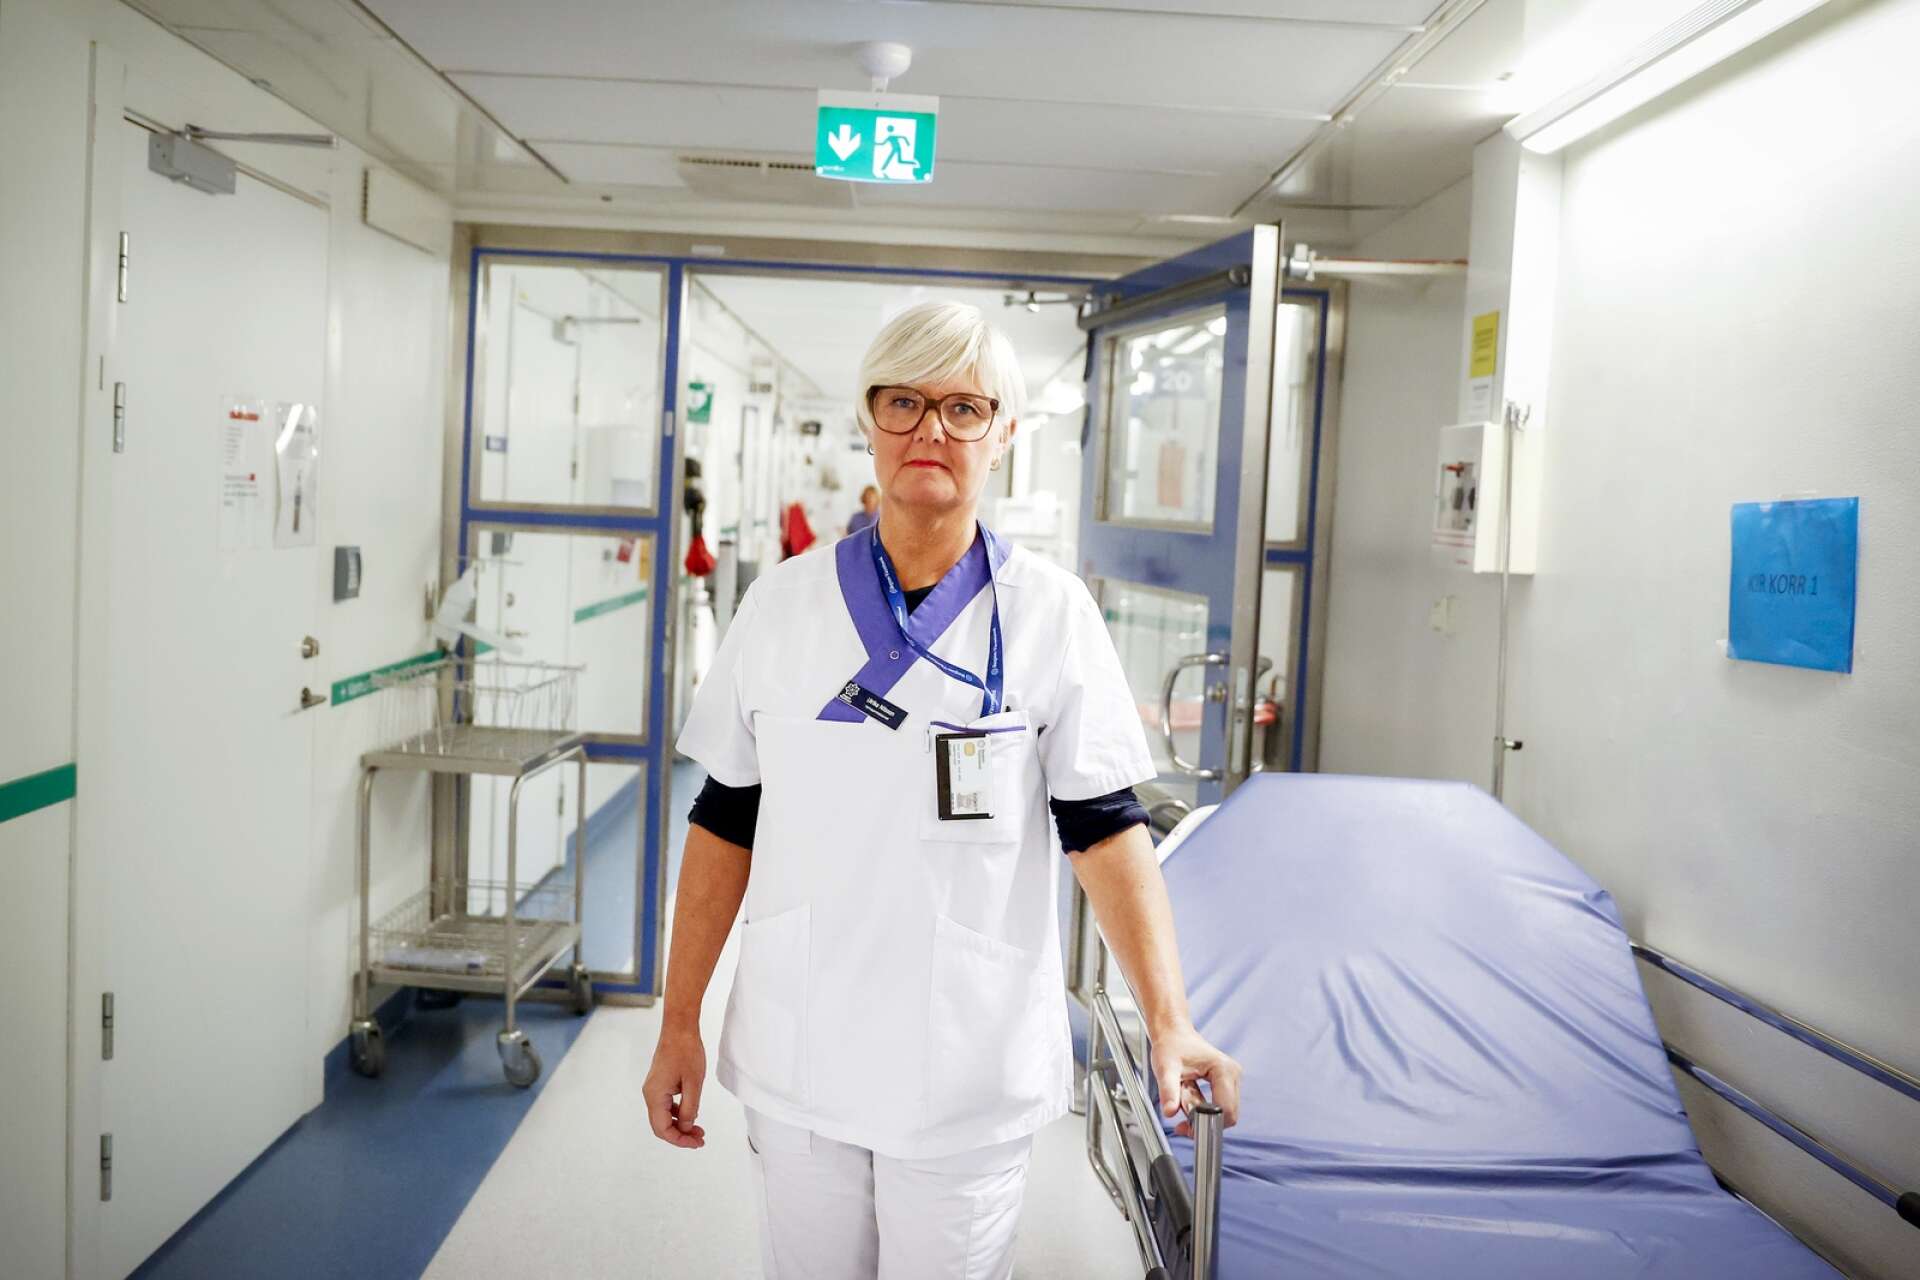 ”Vi är tydliga i vårt arbete med patienter med luftvägsbesvär och smittor”, säger Ulrika Nilsson.